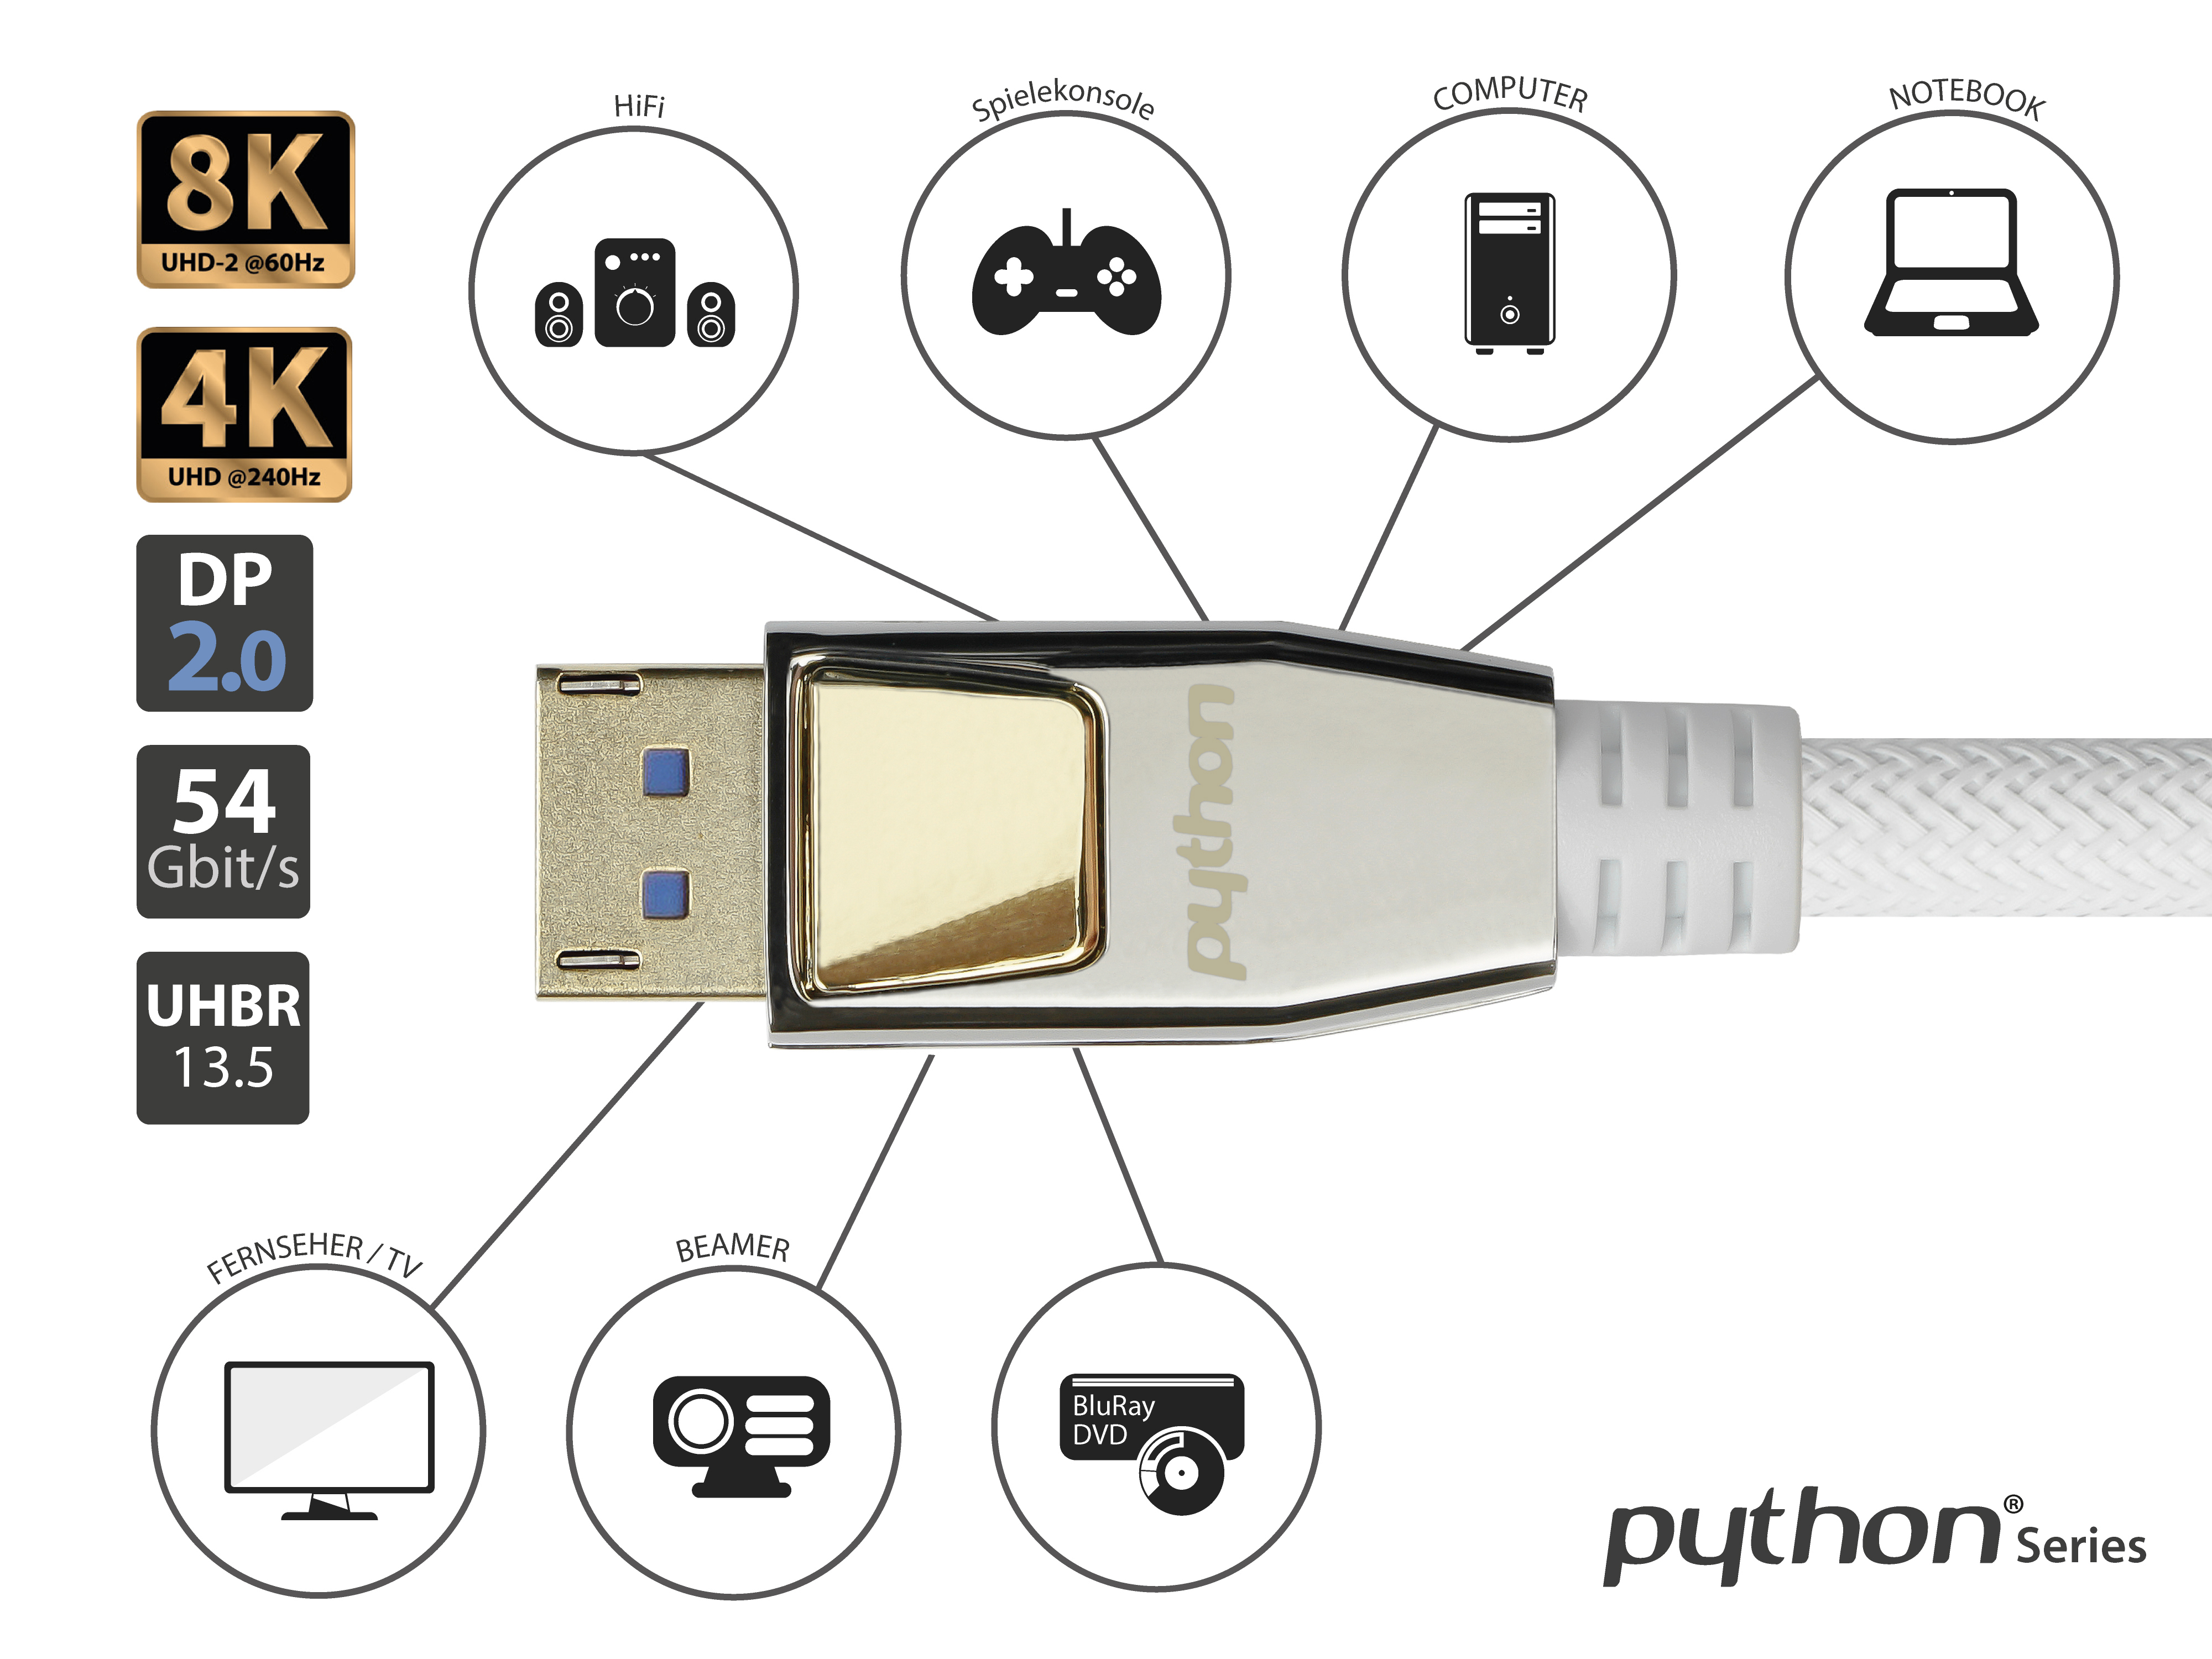 PYTHON CU, vergoldete 0,5 2.0, Kontakte, Gbit/s, Nylongeflecht weiß, Vollmetallstecker, Anschlusskabel Displayport, m 0,5m, 54